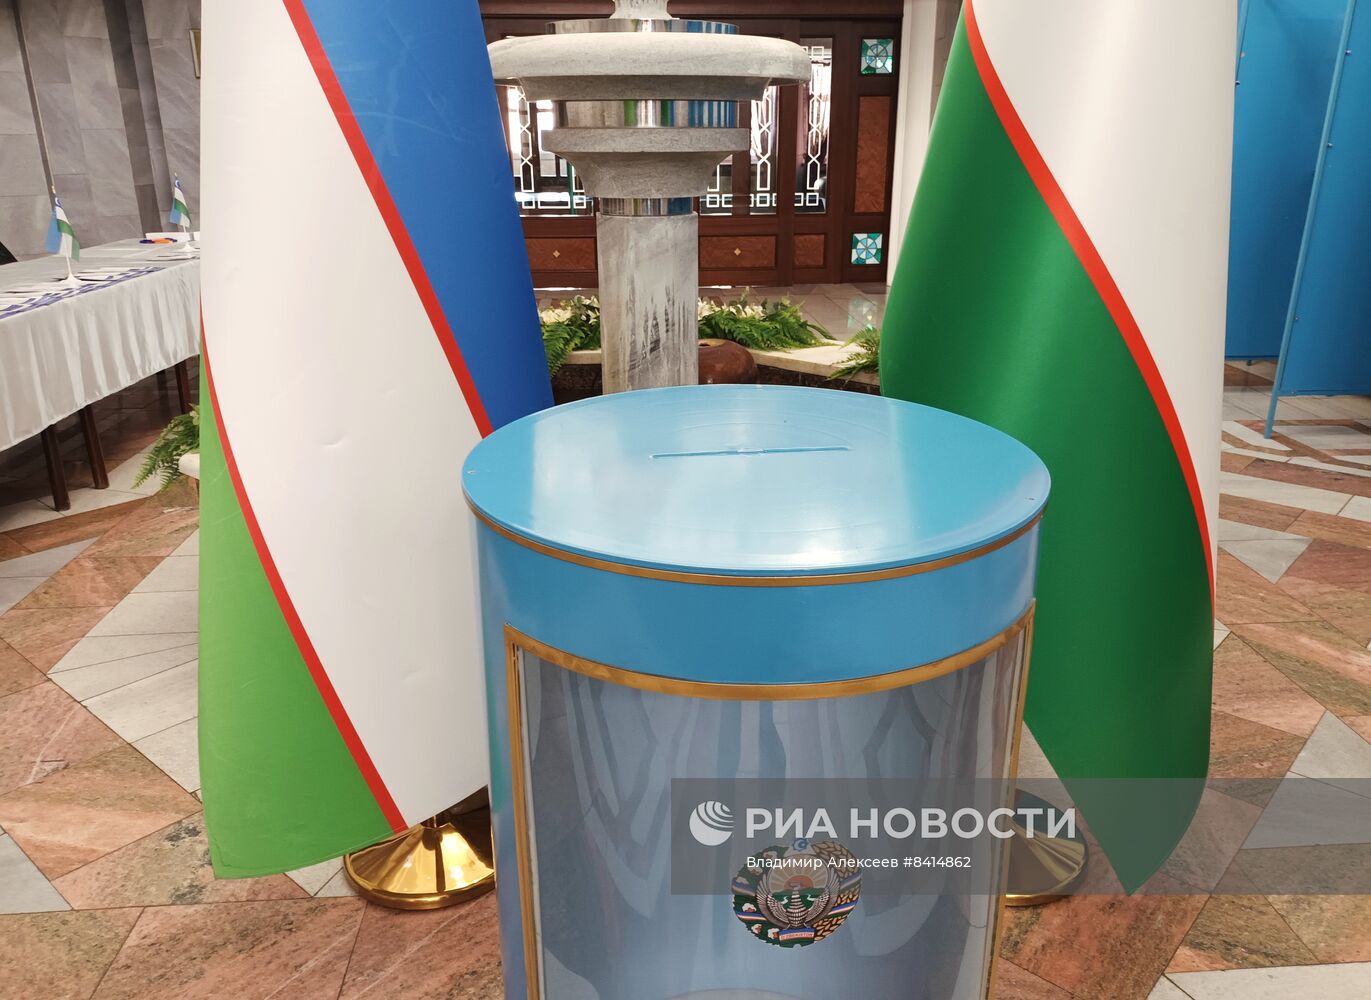 Досрочное голосование на референдуме по принятию новой Конституции Узбекистана